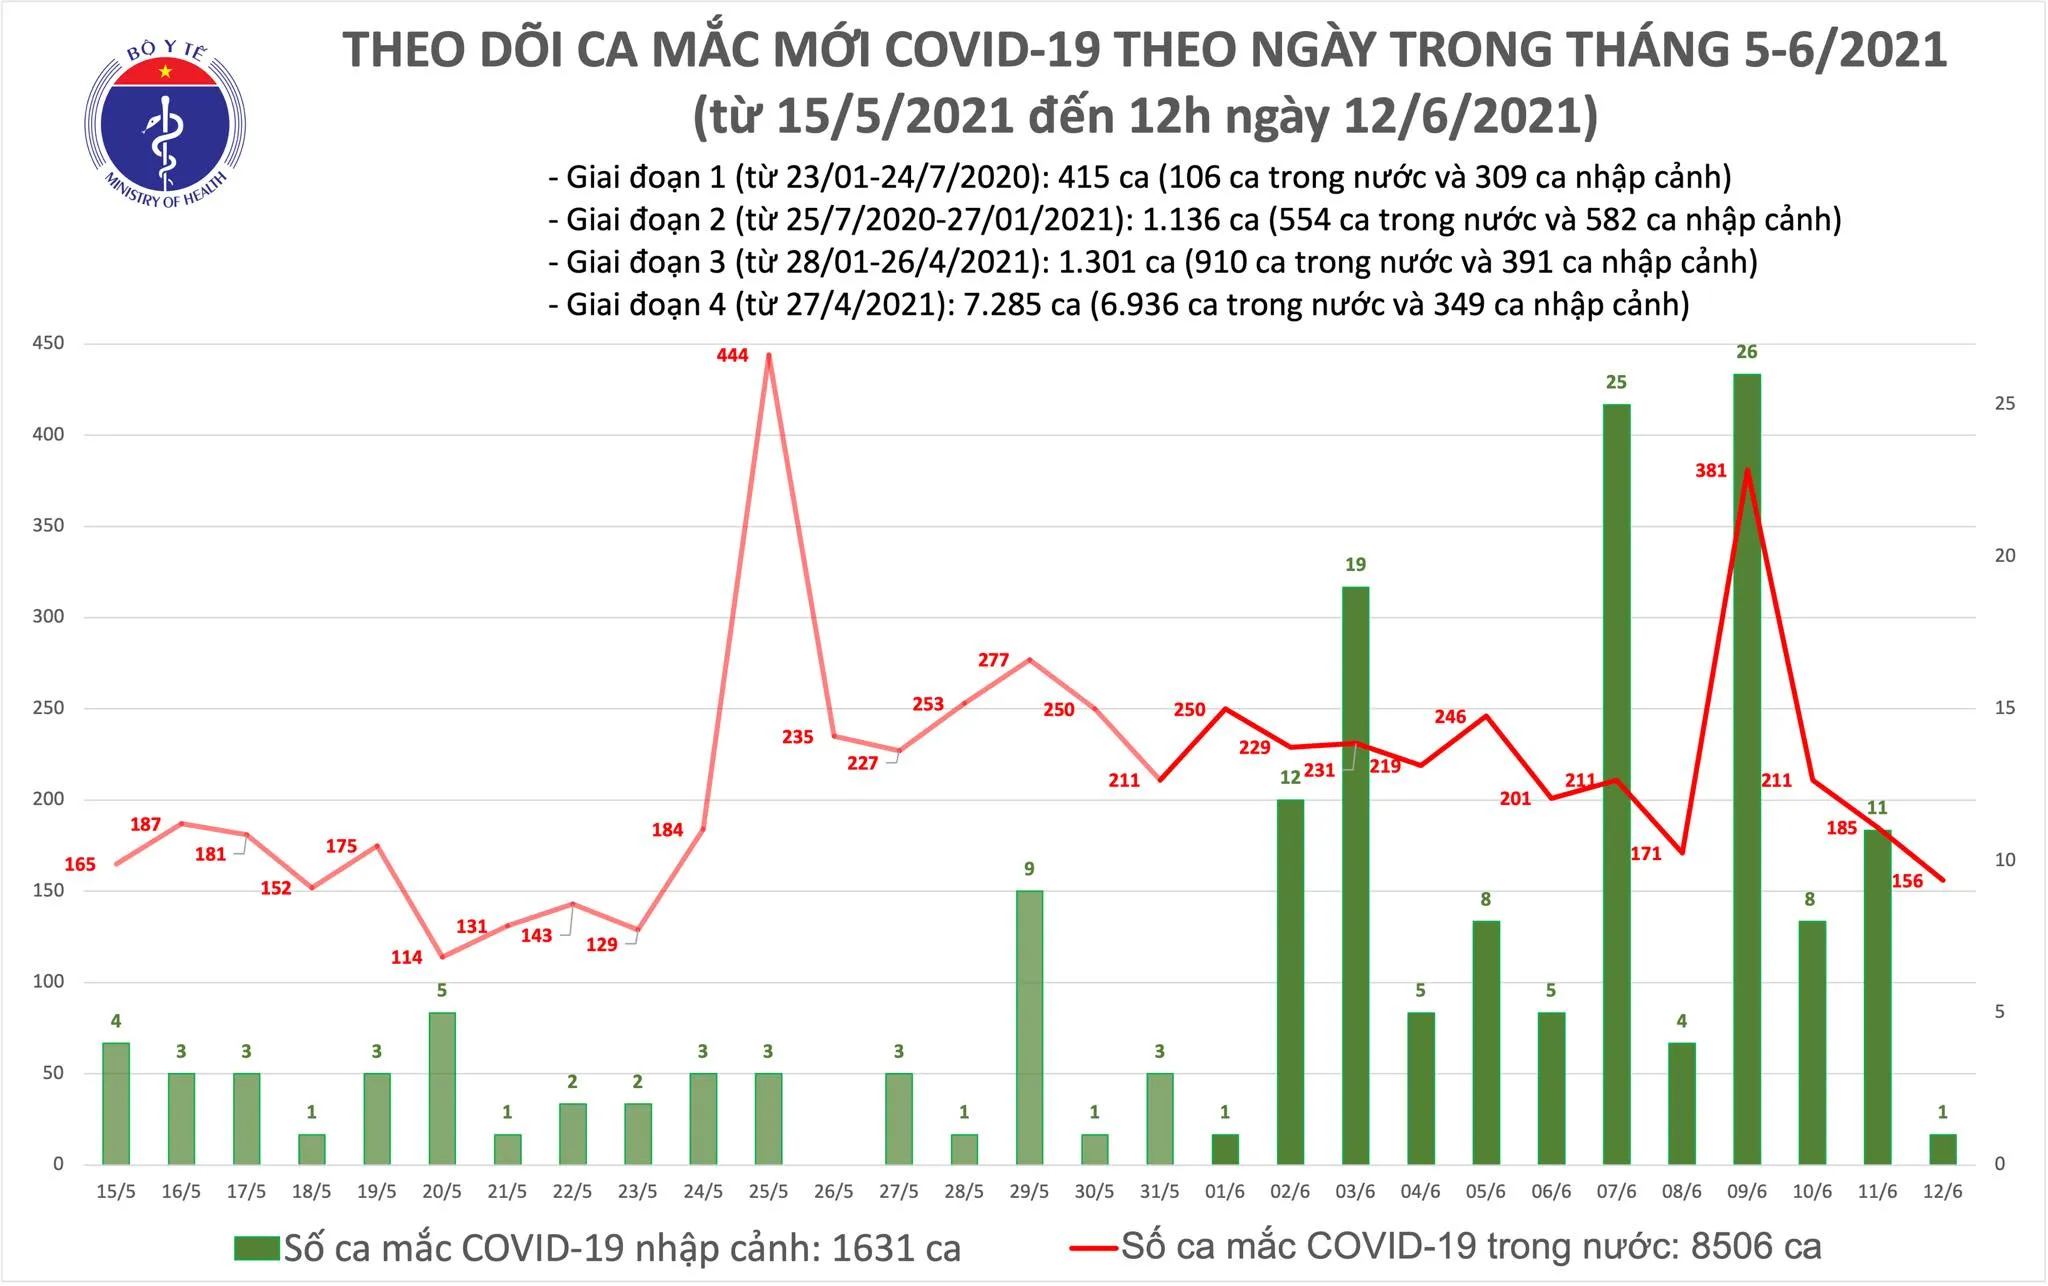 Trưa 12/6, thêm 89 ca mắc COVID-19, trong đó TPHCM có 20 ca trong nước